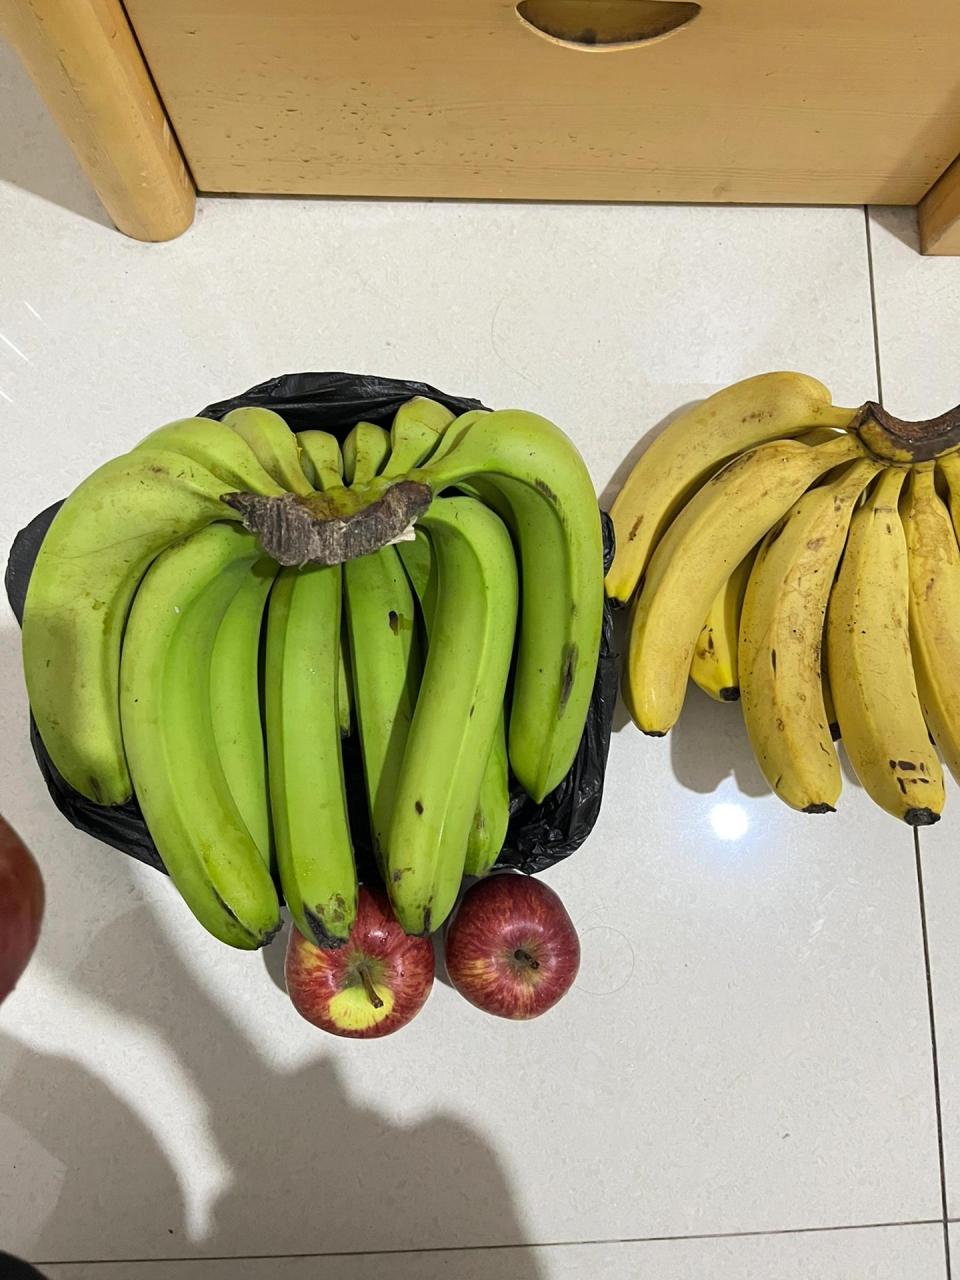 分享一个青香蕉催熟的方法~ 放入苹果密封,纸箱塑料袋都可,放的越多熟